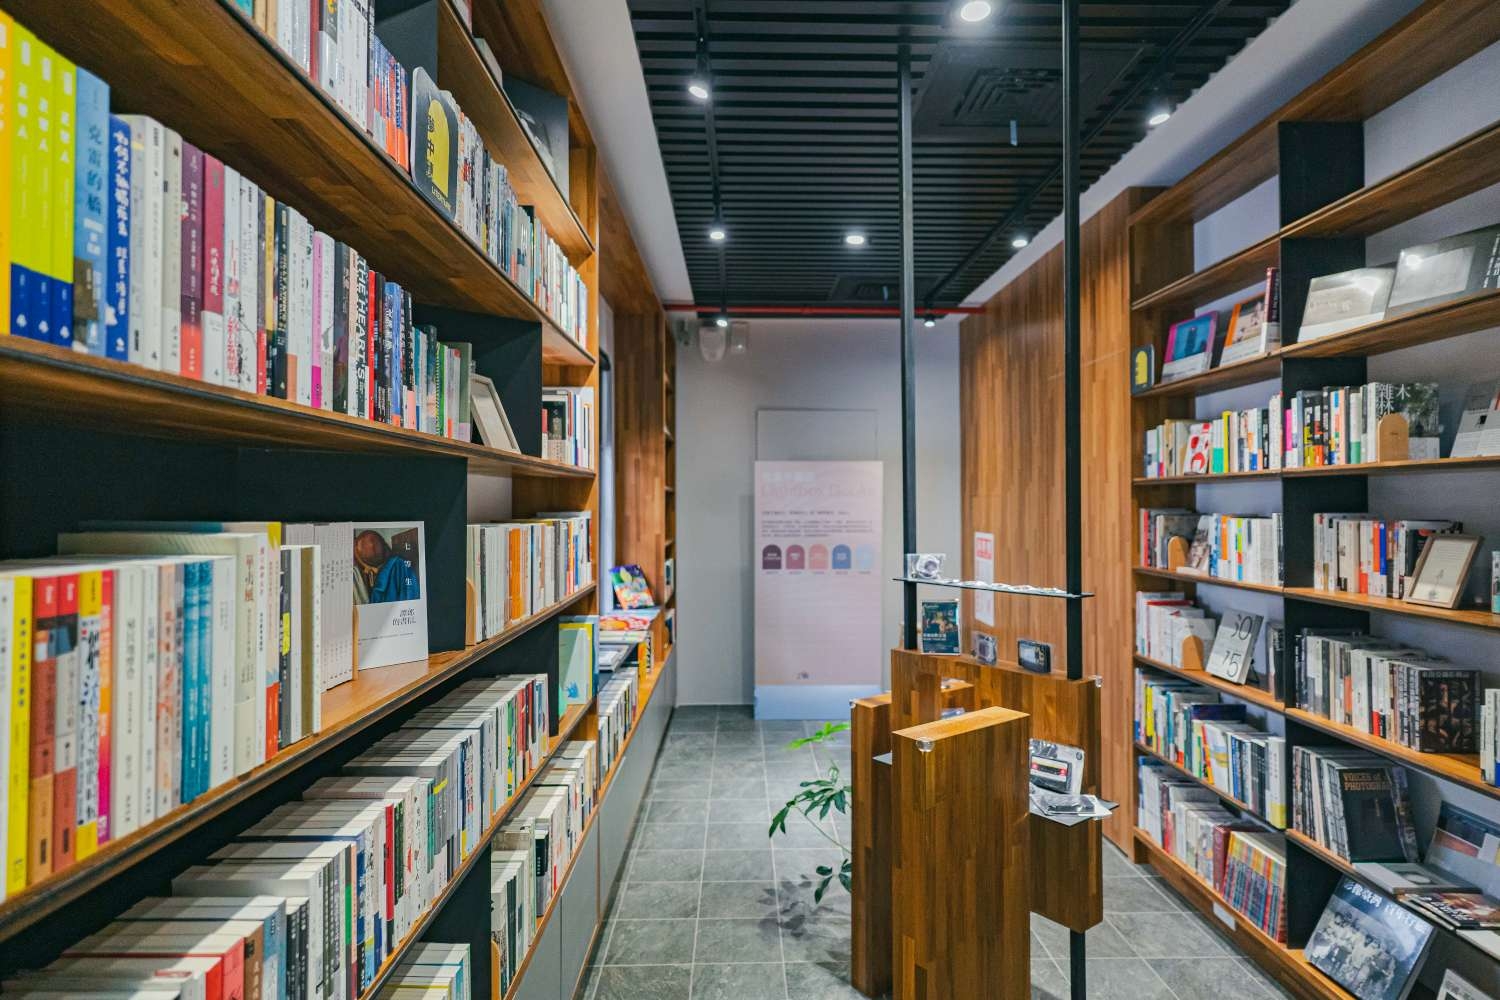 新竹市影像博物館為複合式型態影院，一樓「光盒子書店」依照全球的電影產業地域與文化歷史詳細分類，打造選書獨特且豐富的「電影書牆」。